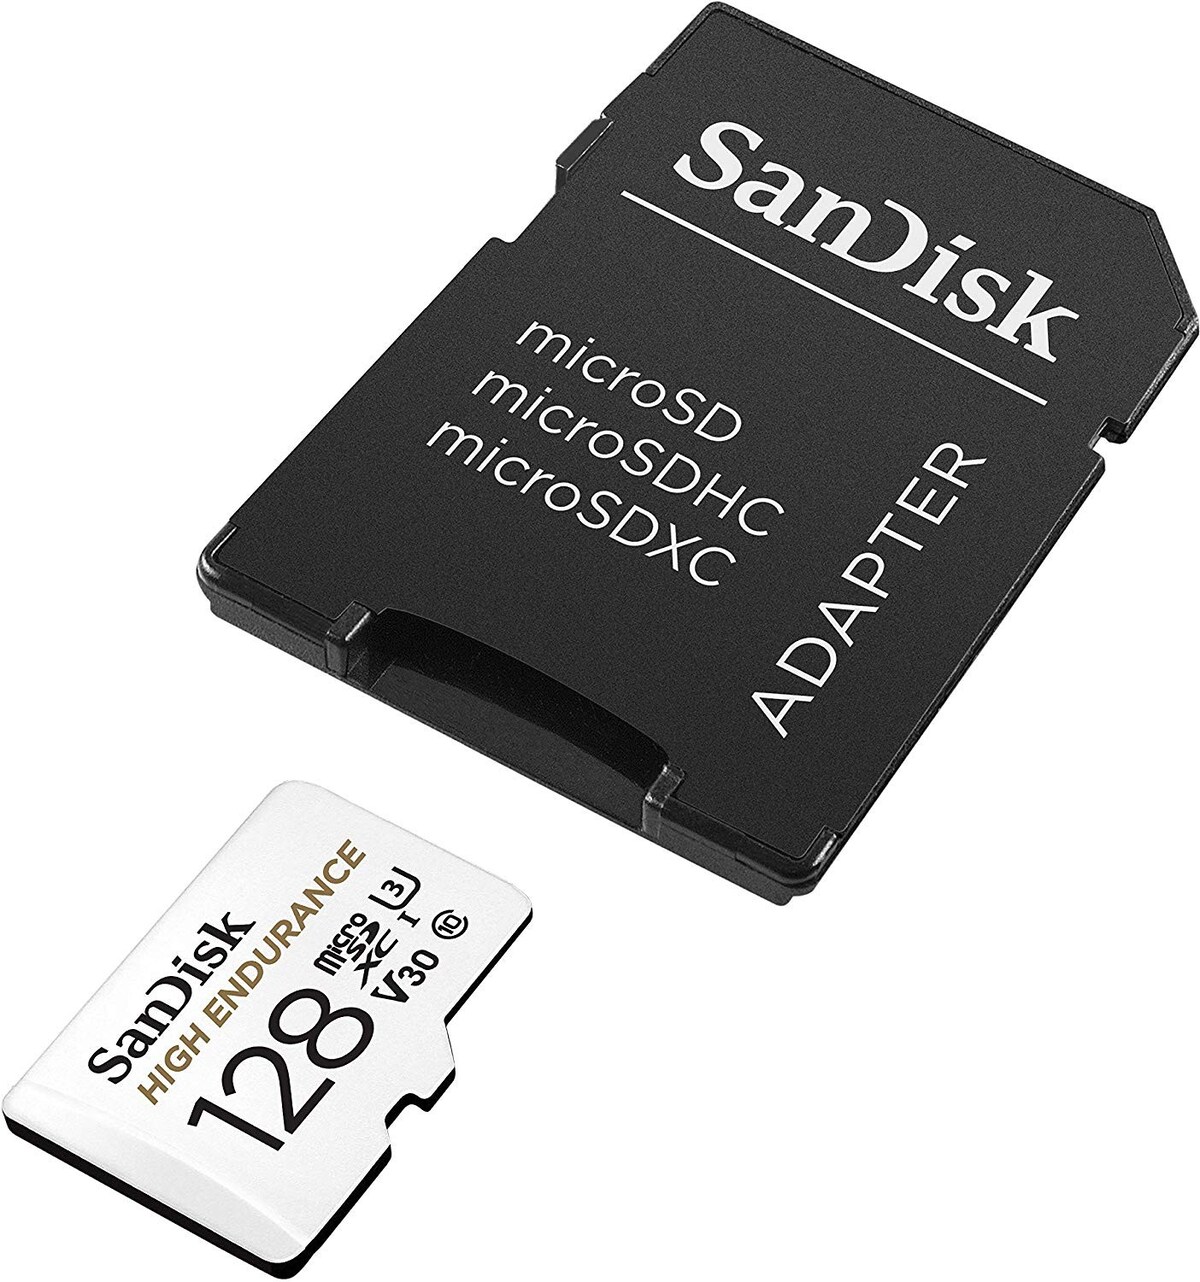  microSDXCカード 128GB 高耐久モデル画像2 